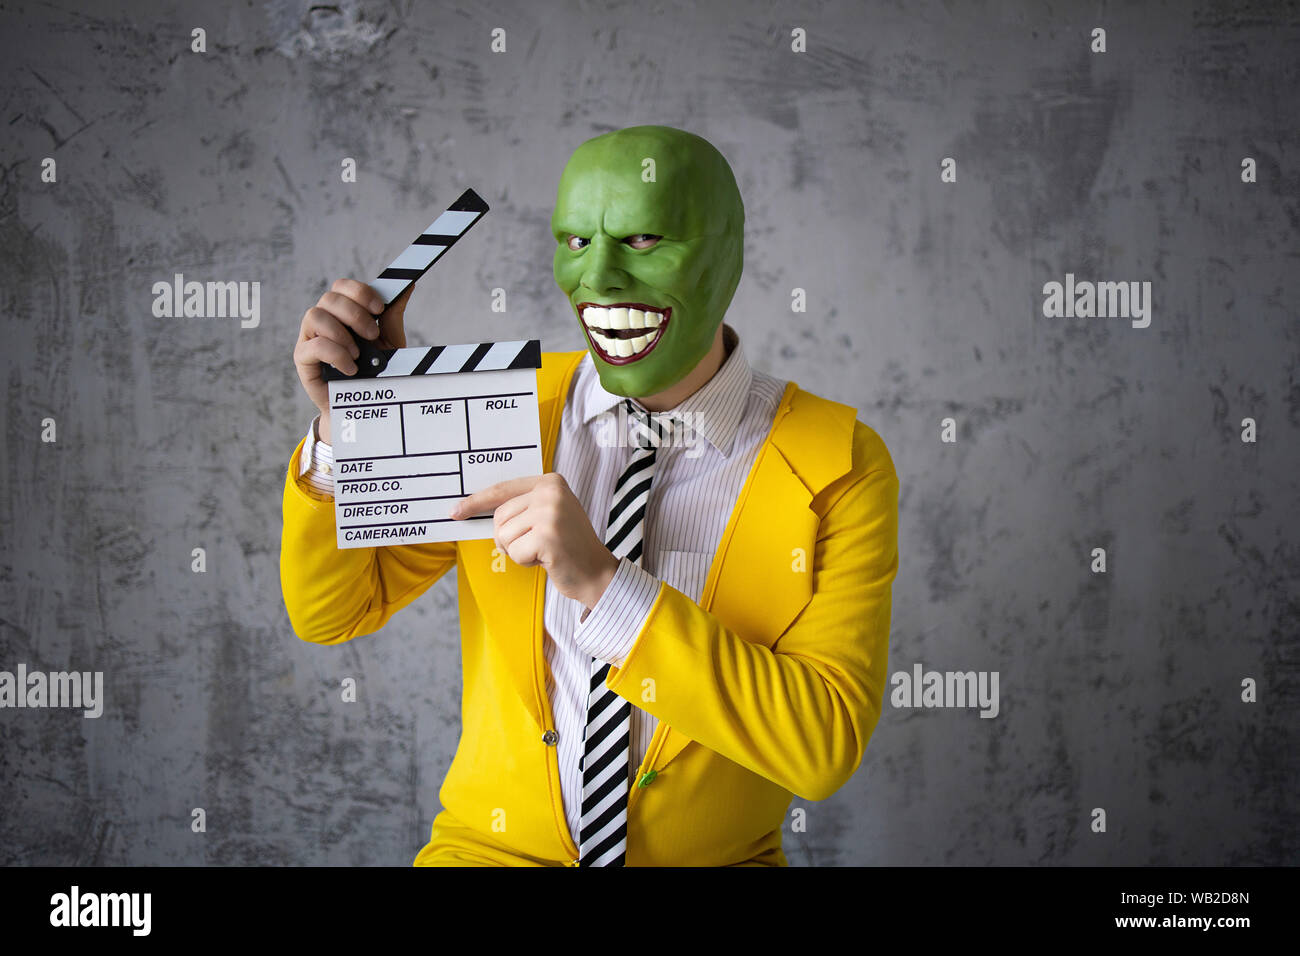 film the mask full movie